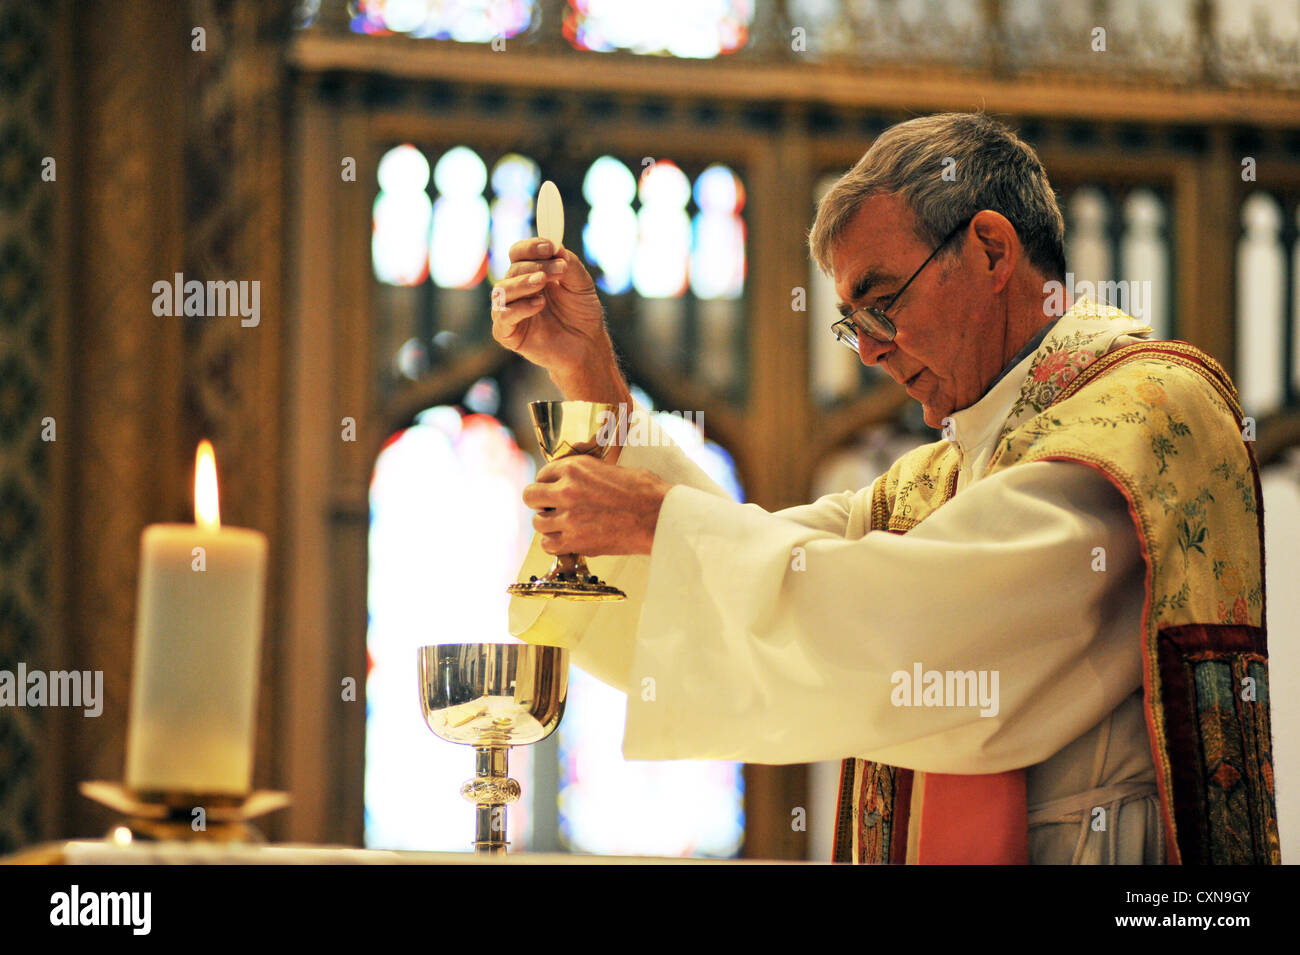 El sacerdote católico en una misa de boda, Lancashire UK Foto de stock